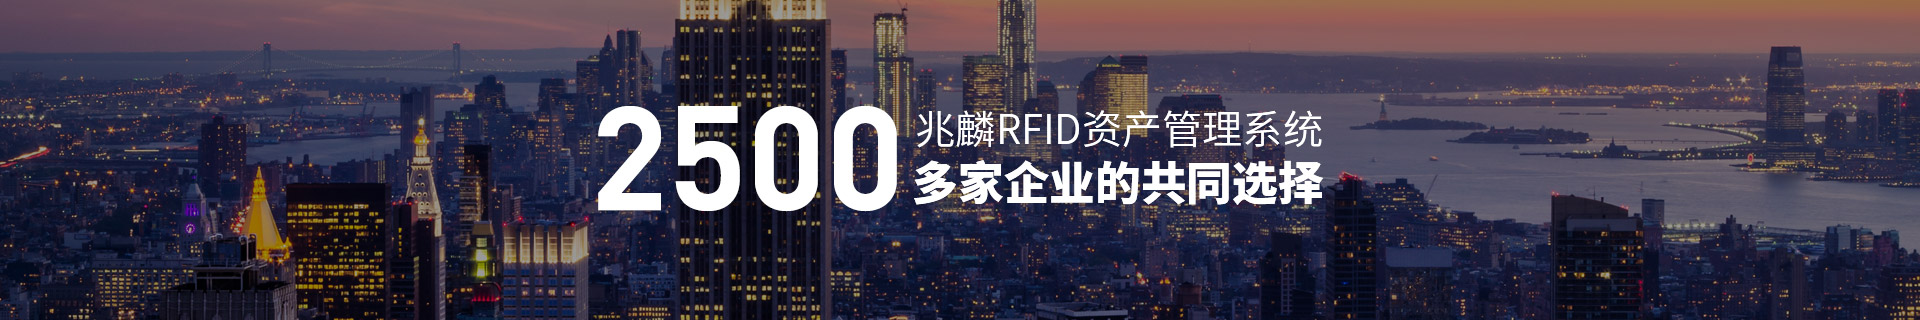 RFID资产管理系统